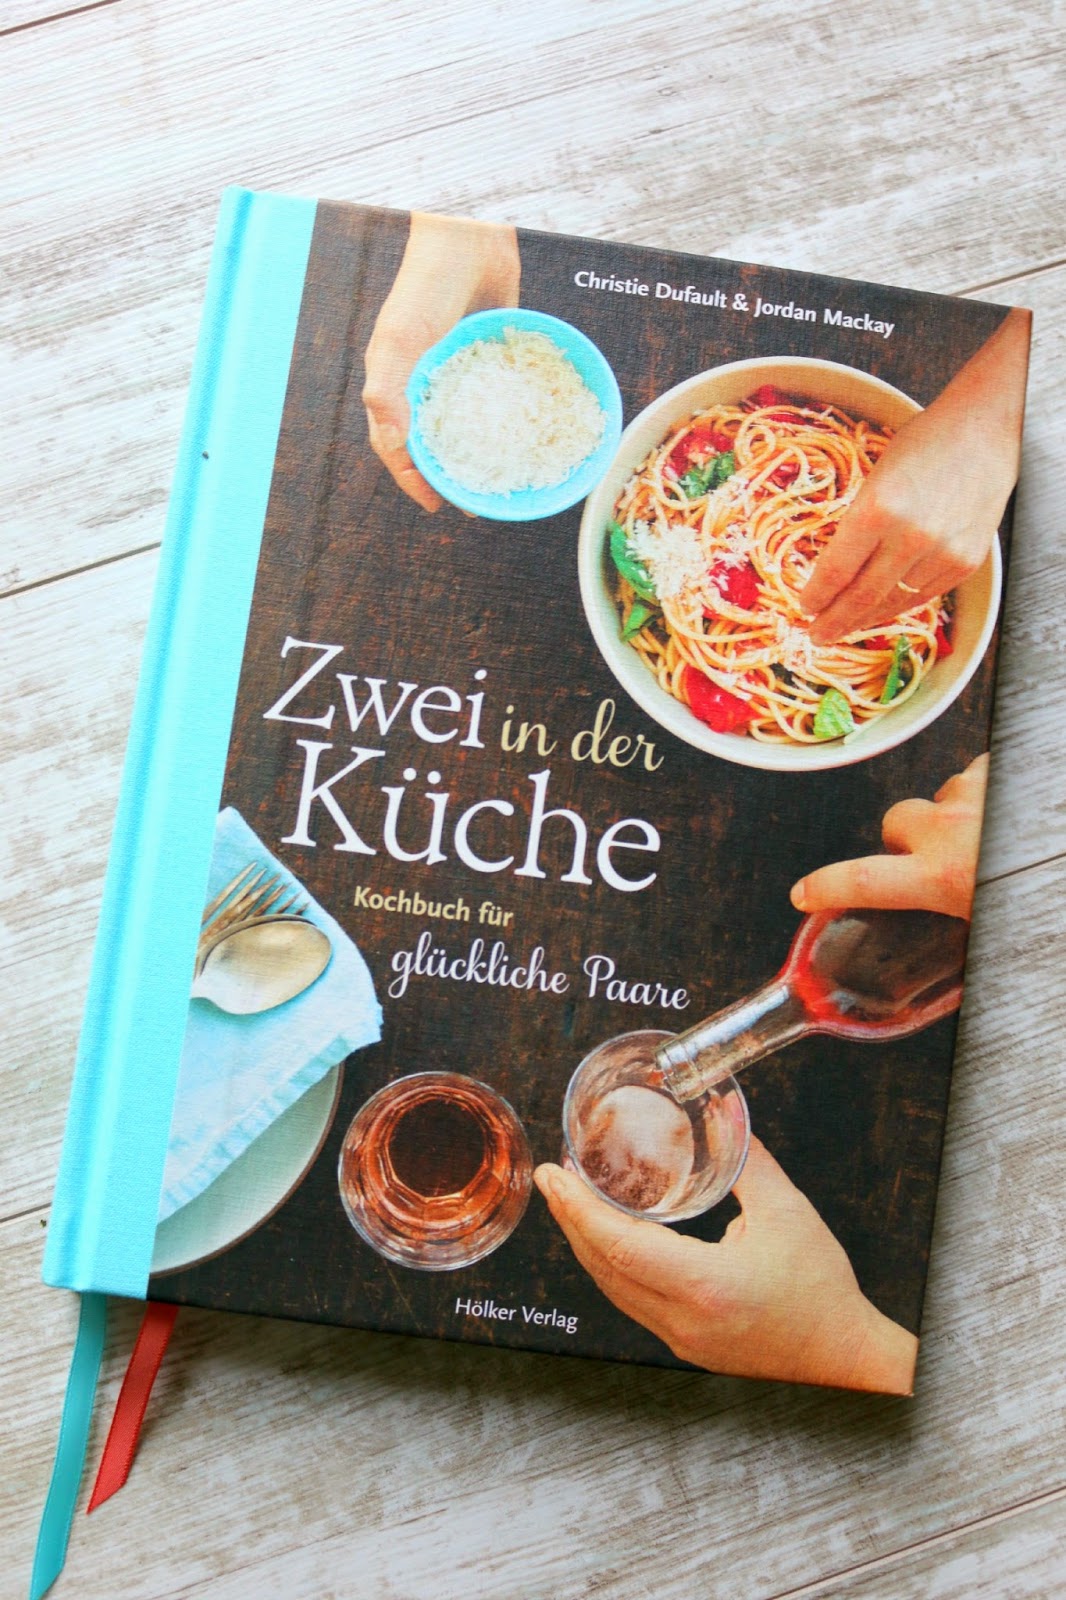 Kochbuch, Rezension, Hölker Verlag